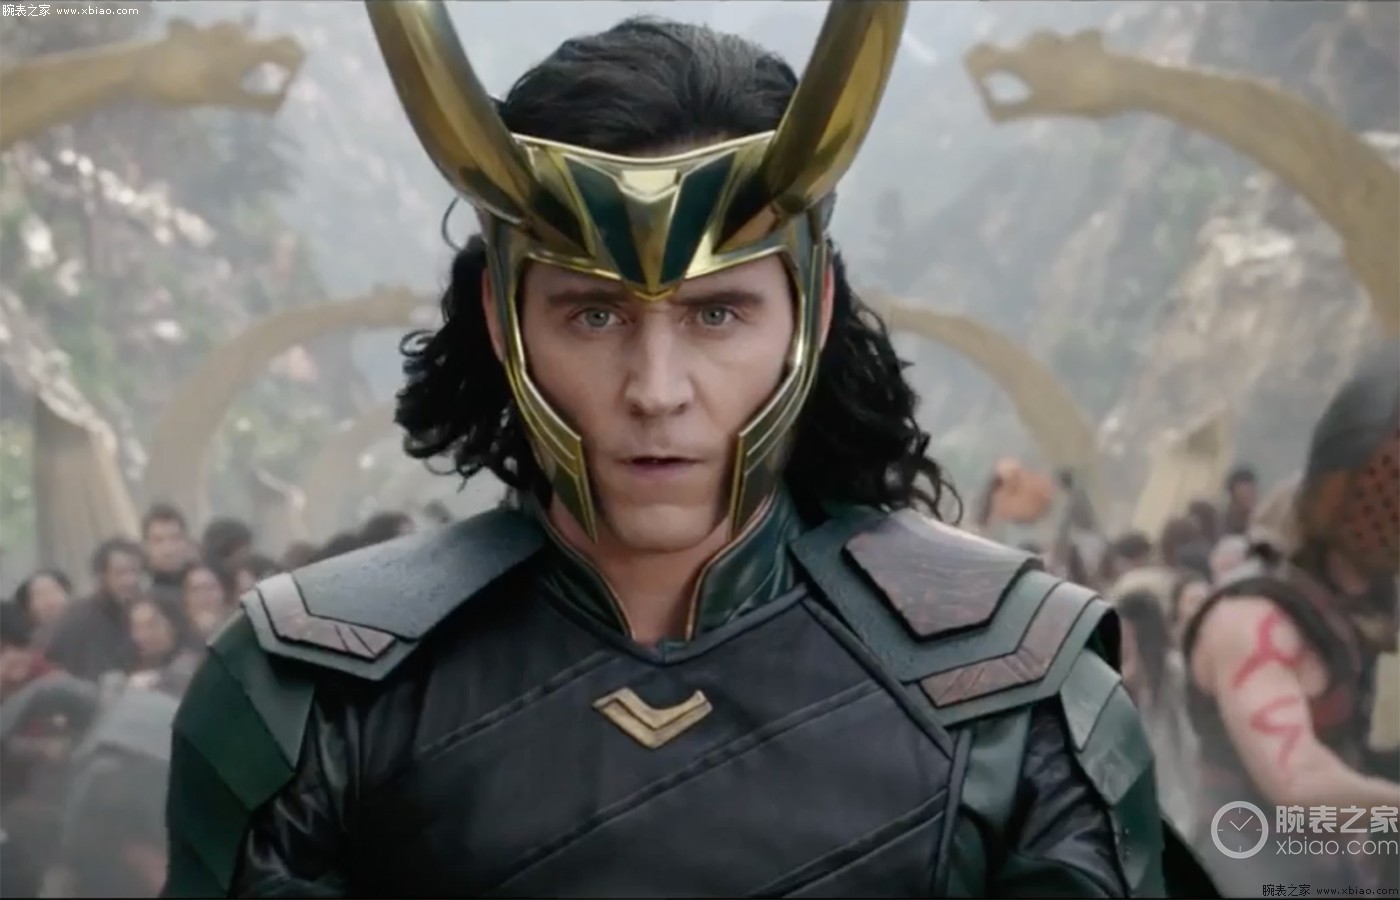 Loki - The Avengers Wallpaper (30730359) - Fanpop